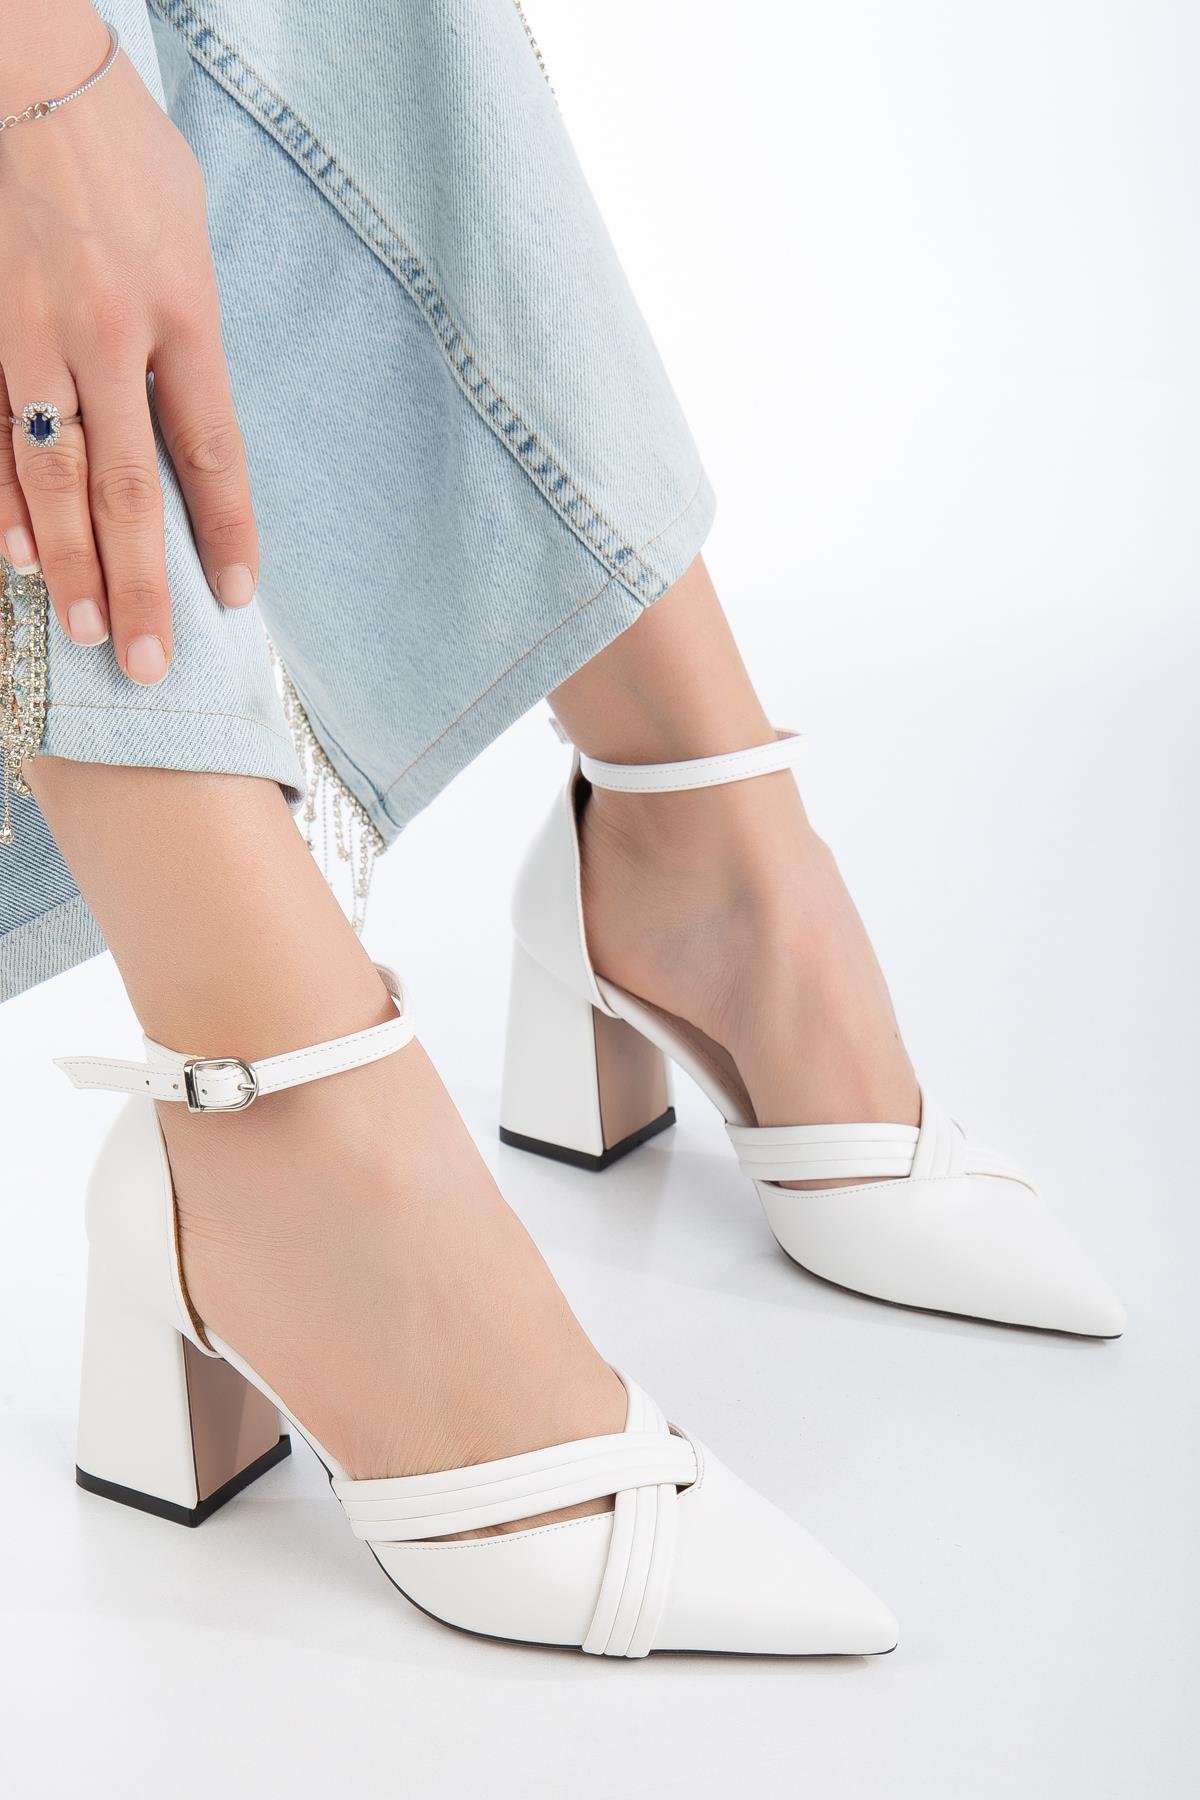 Karnıyarık Model Fitilli Beyaz Büyük Numara Kadın Ayakkabı Topuklu